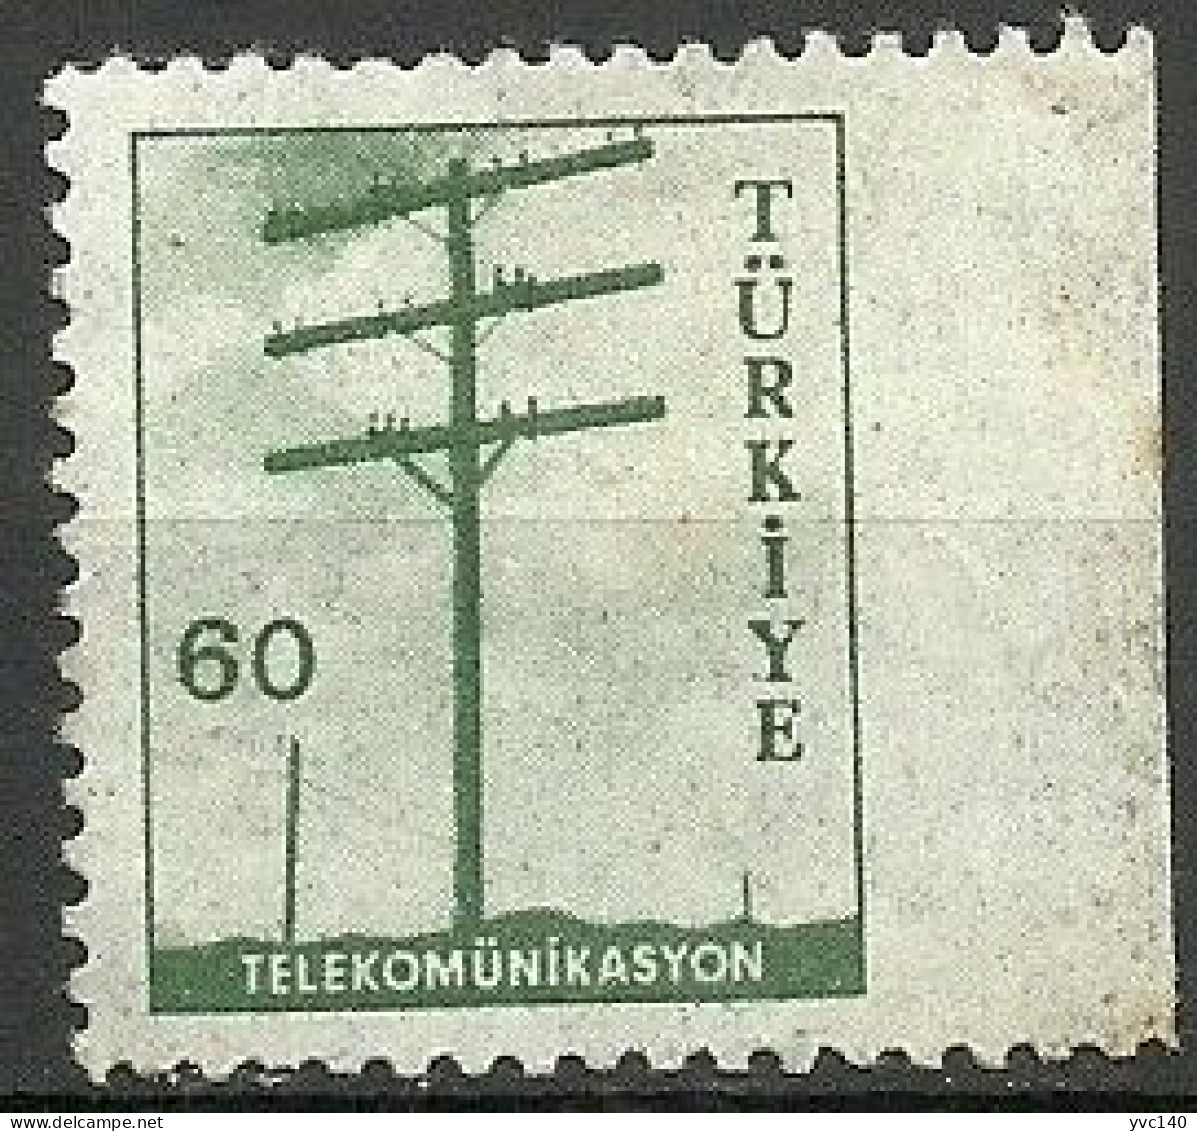 Turkey; 1959 Pictorial Postage Stamp 60 K. ERROR "Imperf. Edge" - Neufs